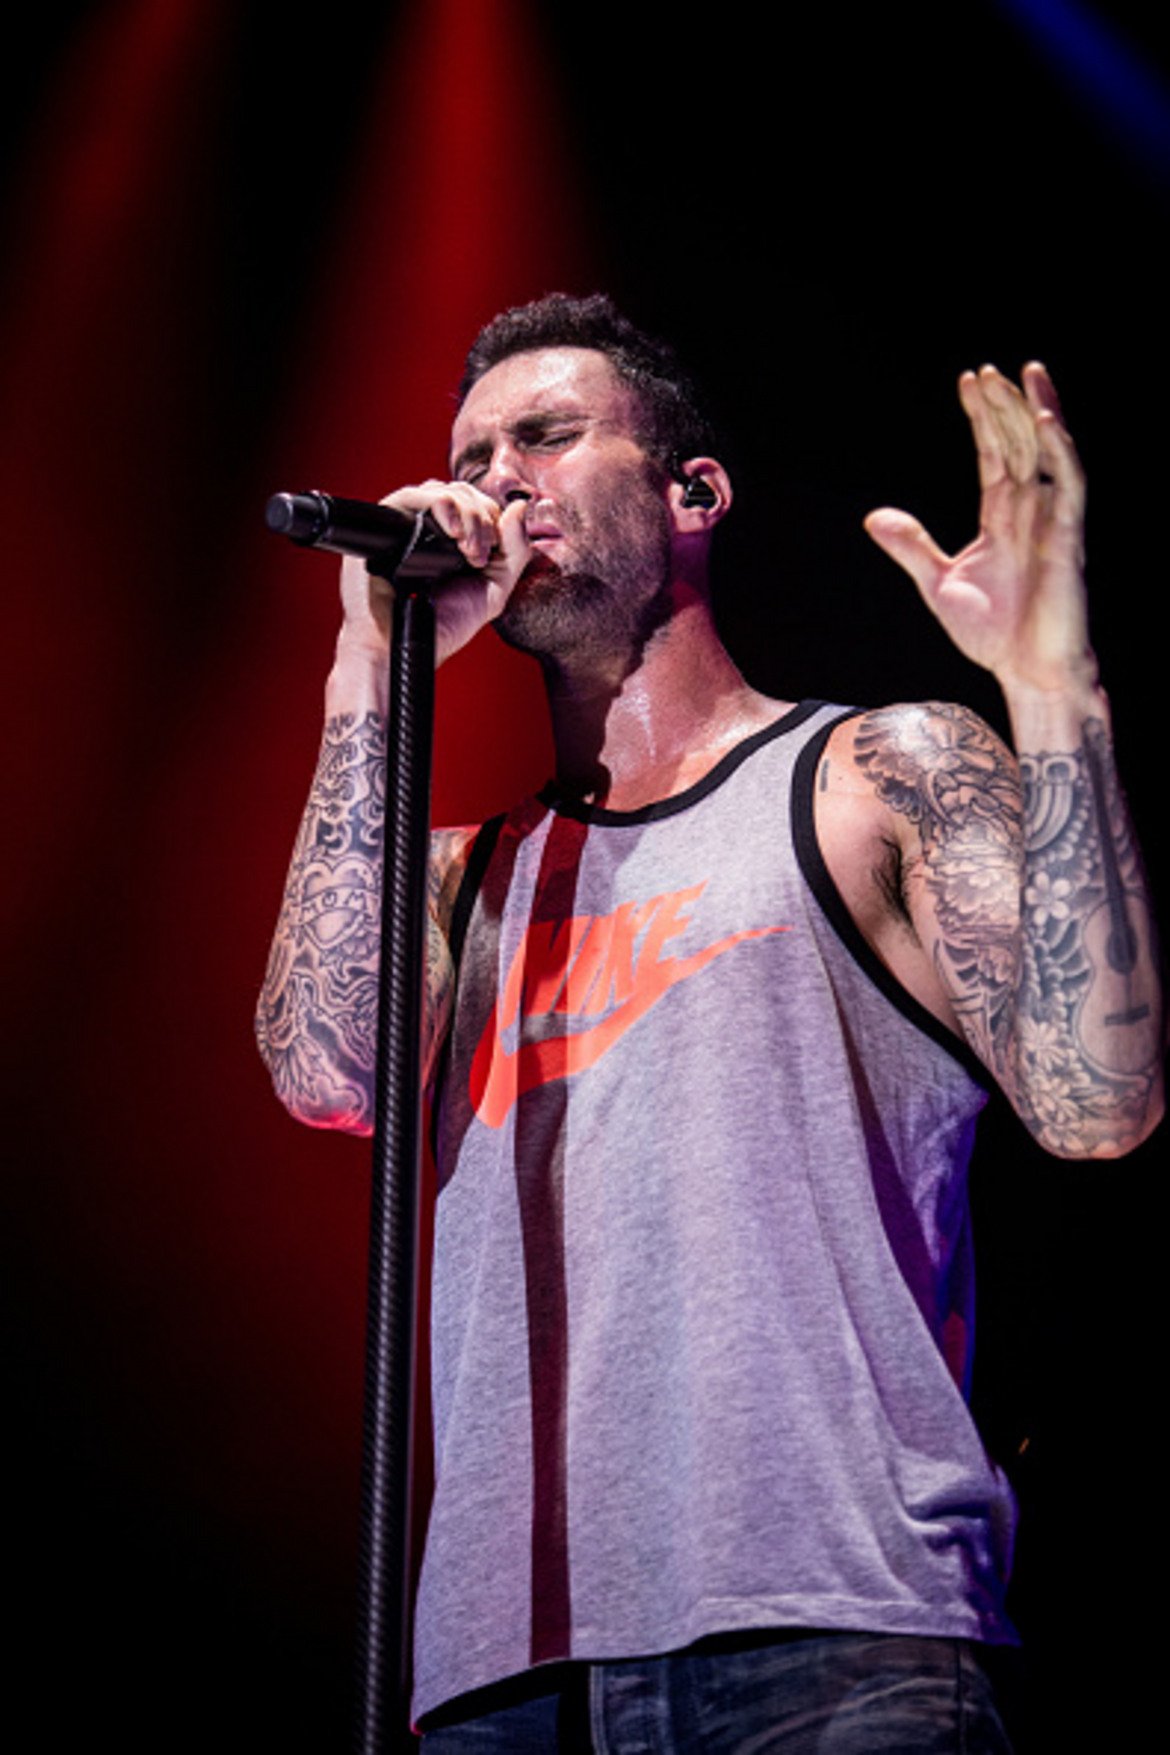 За фронтменът на Maroon 5 Адам Ливайн потникът е нещо като сценична униформа, най-вероятно за да показва "ръкавите" от татуси. Позволено му е, но не само заради татуировките.